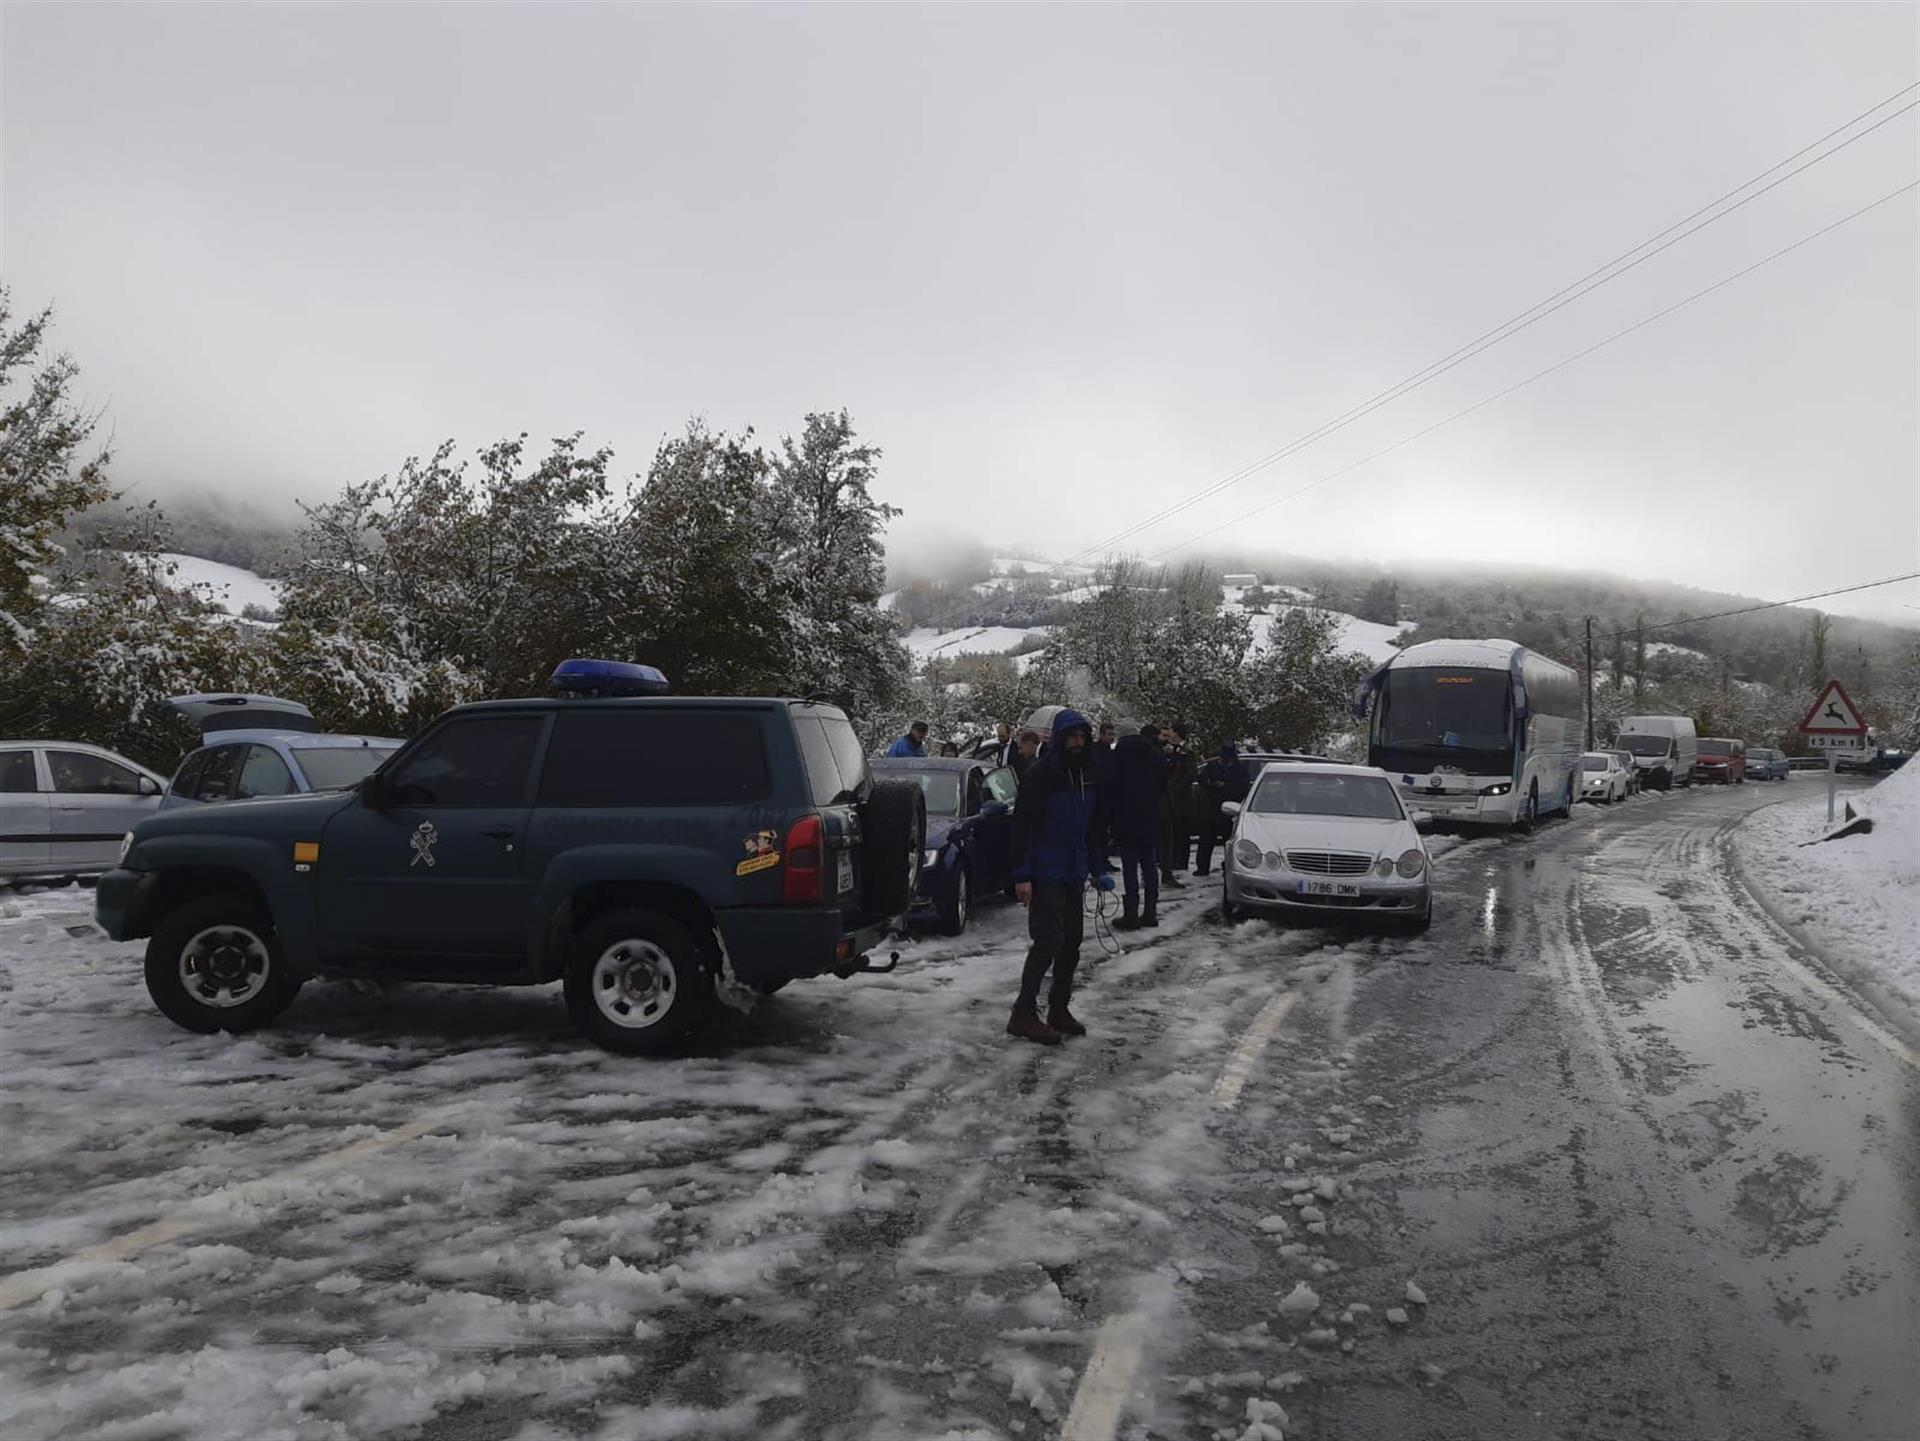 La Guardia civil auxilia a un autobús y los vehículos que acudían a una boda en Roncesvalles tras quedarse bloqueados por la nieve en la N135, este sábado en el Alto de Mezkiritz. EFE/ Guardia Civil SÓLO USO EDITORIAL / SÓLO DISPONIBLE PARA ILUSTRAR LA NOTICIA QUE ACOMPAÑA (CRÉDITO OBLIGATORIO)